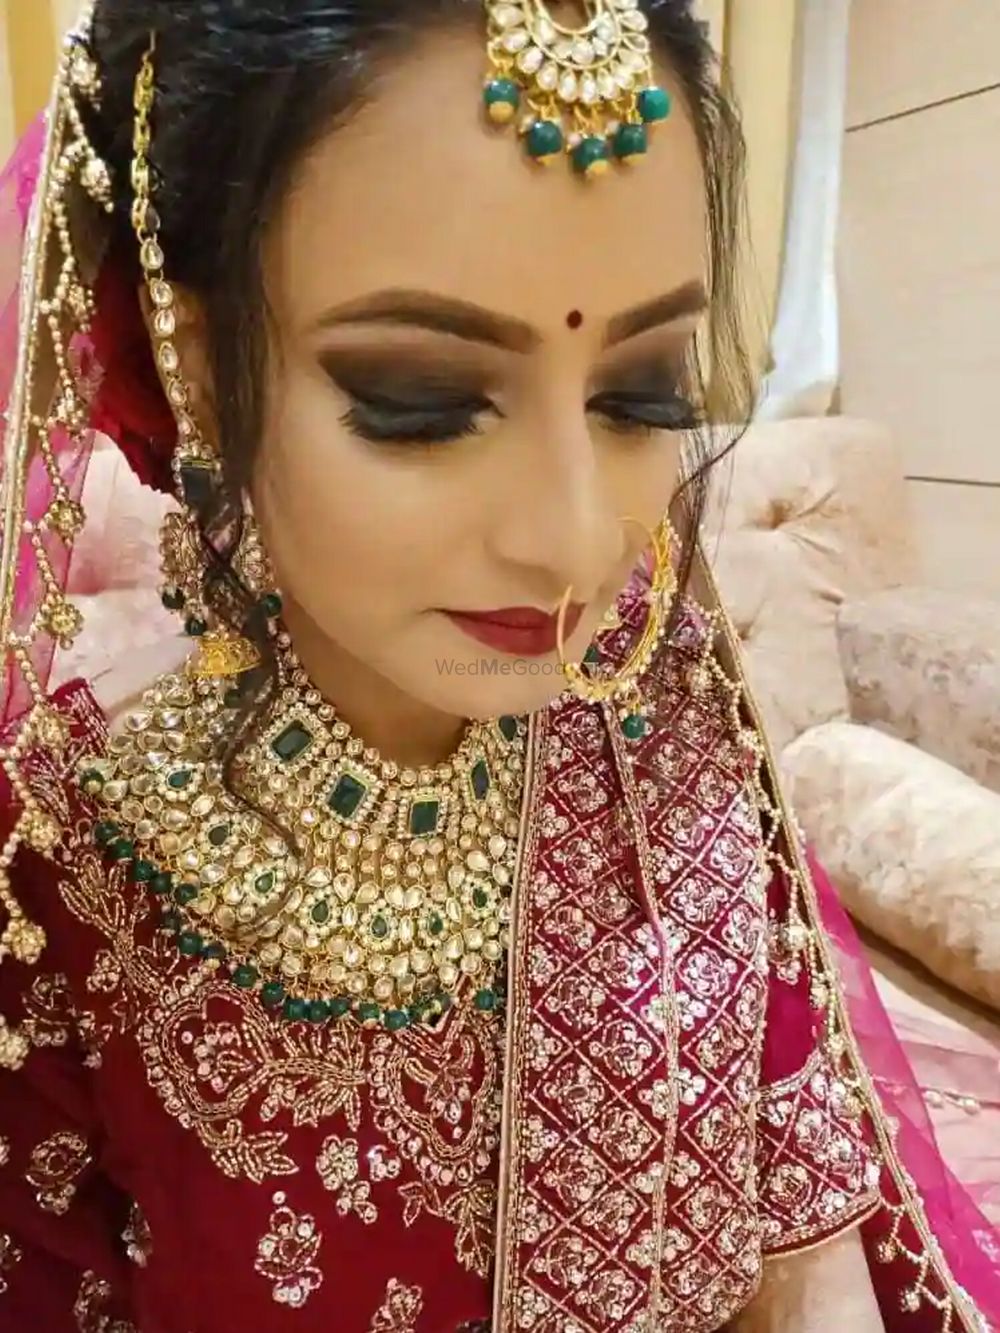 Photo By Nain Sain Salon - Bridal Makeup